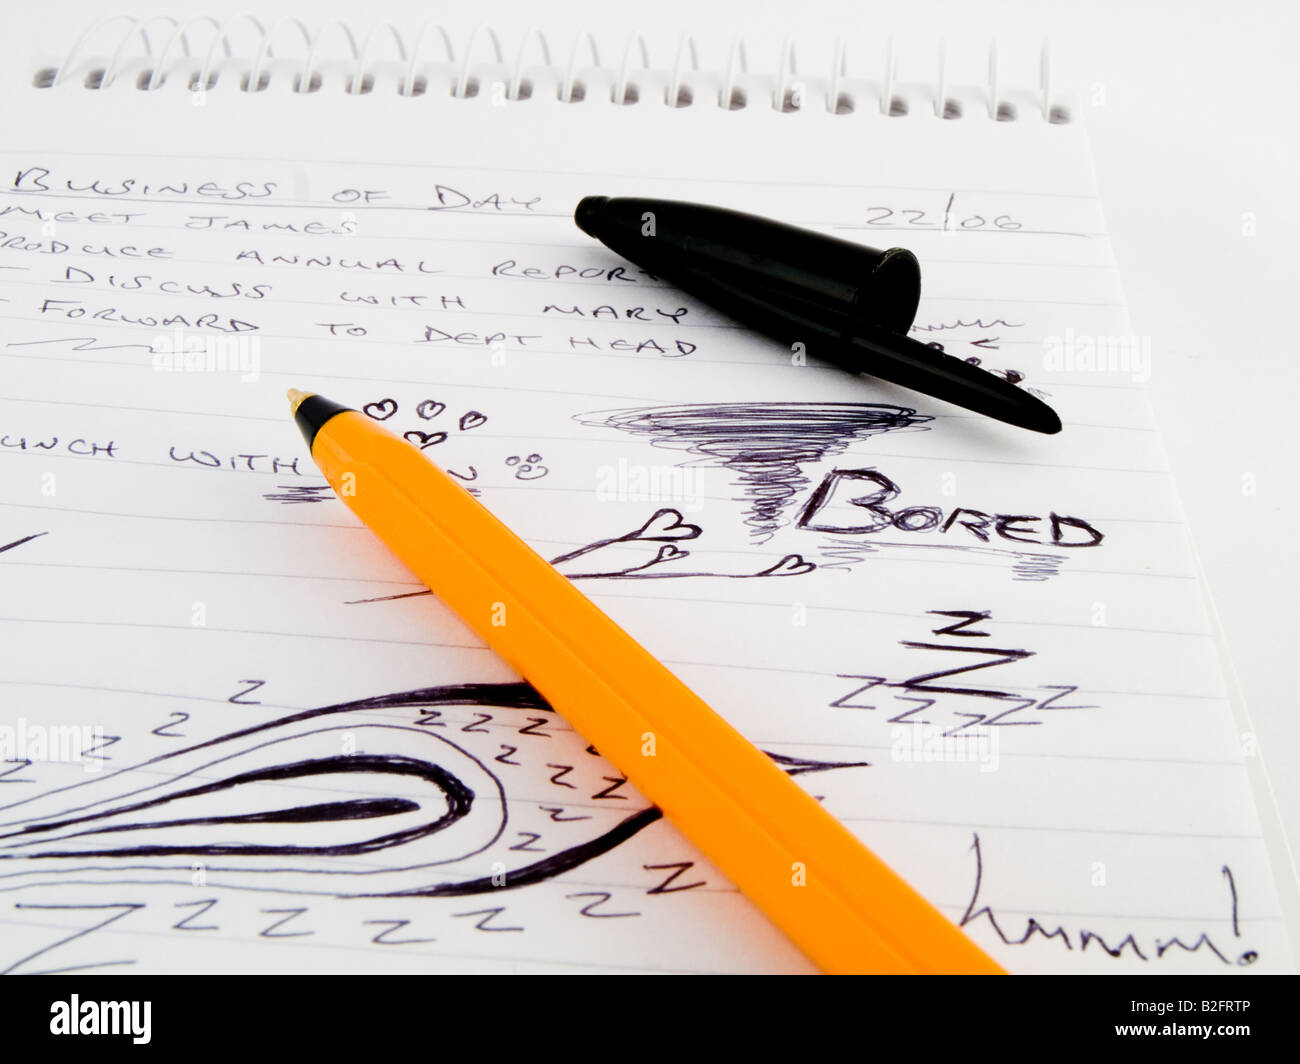 Doodle Sketch bordée d'affaires avec le bloc-notes de travail ennuyeux et dessins orange noir Stylo bille Bic Marqueur sur fond blanc Banque D'Images